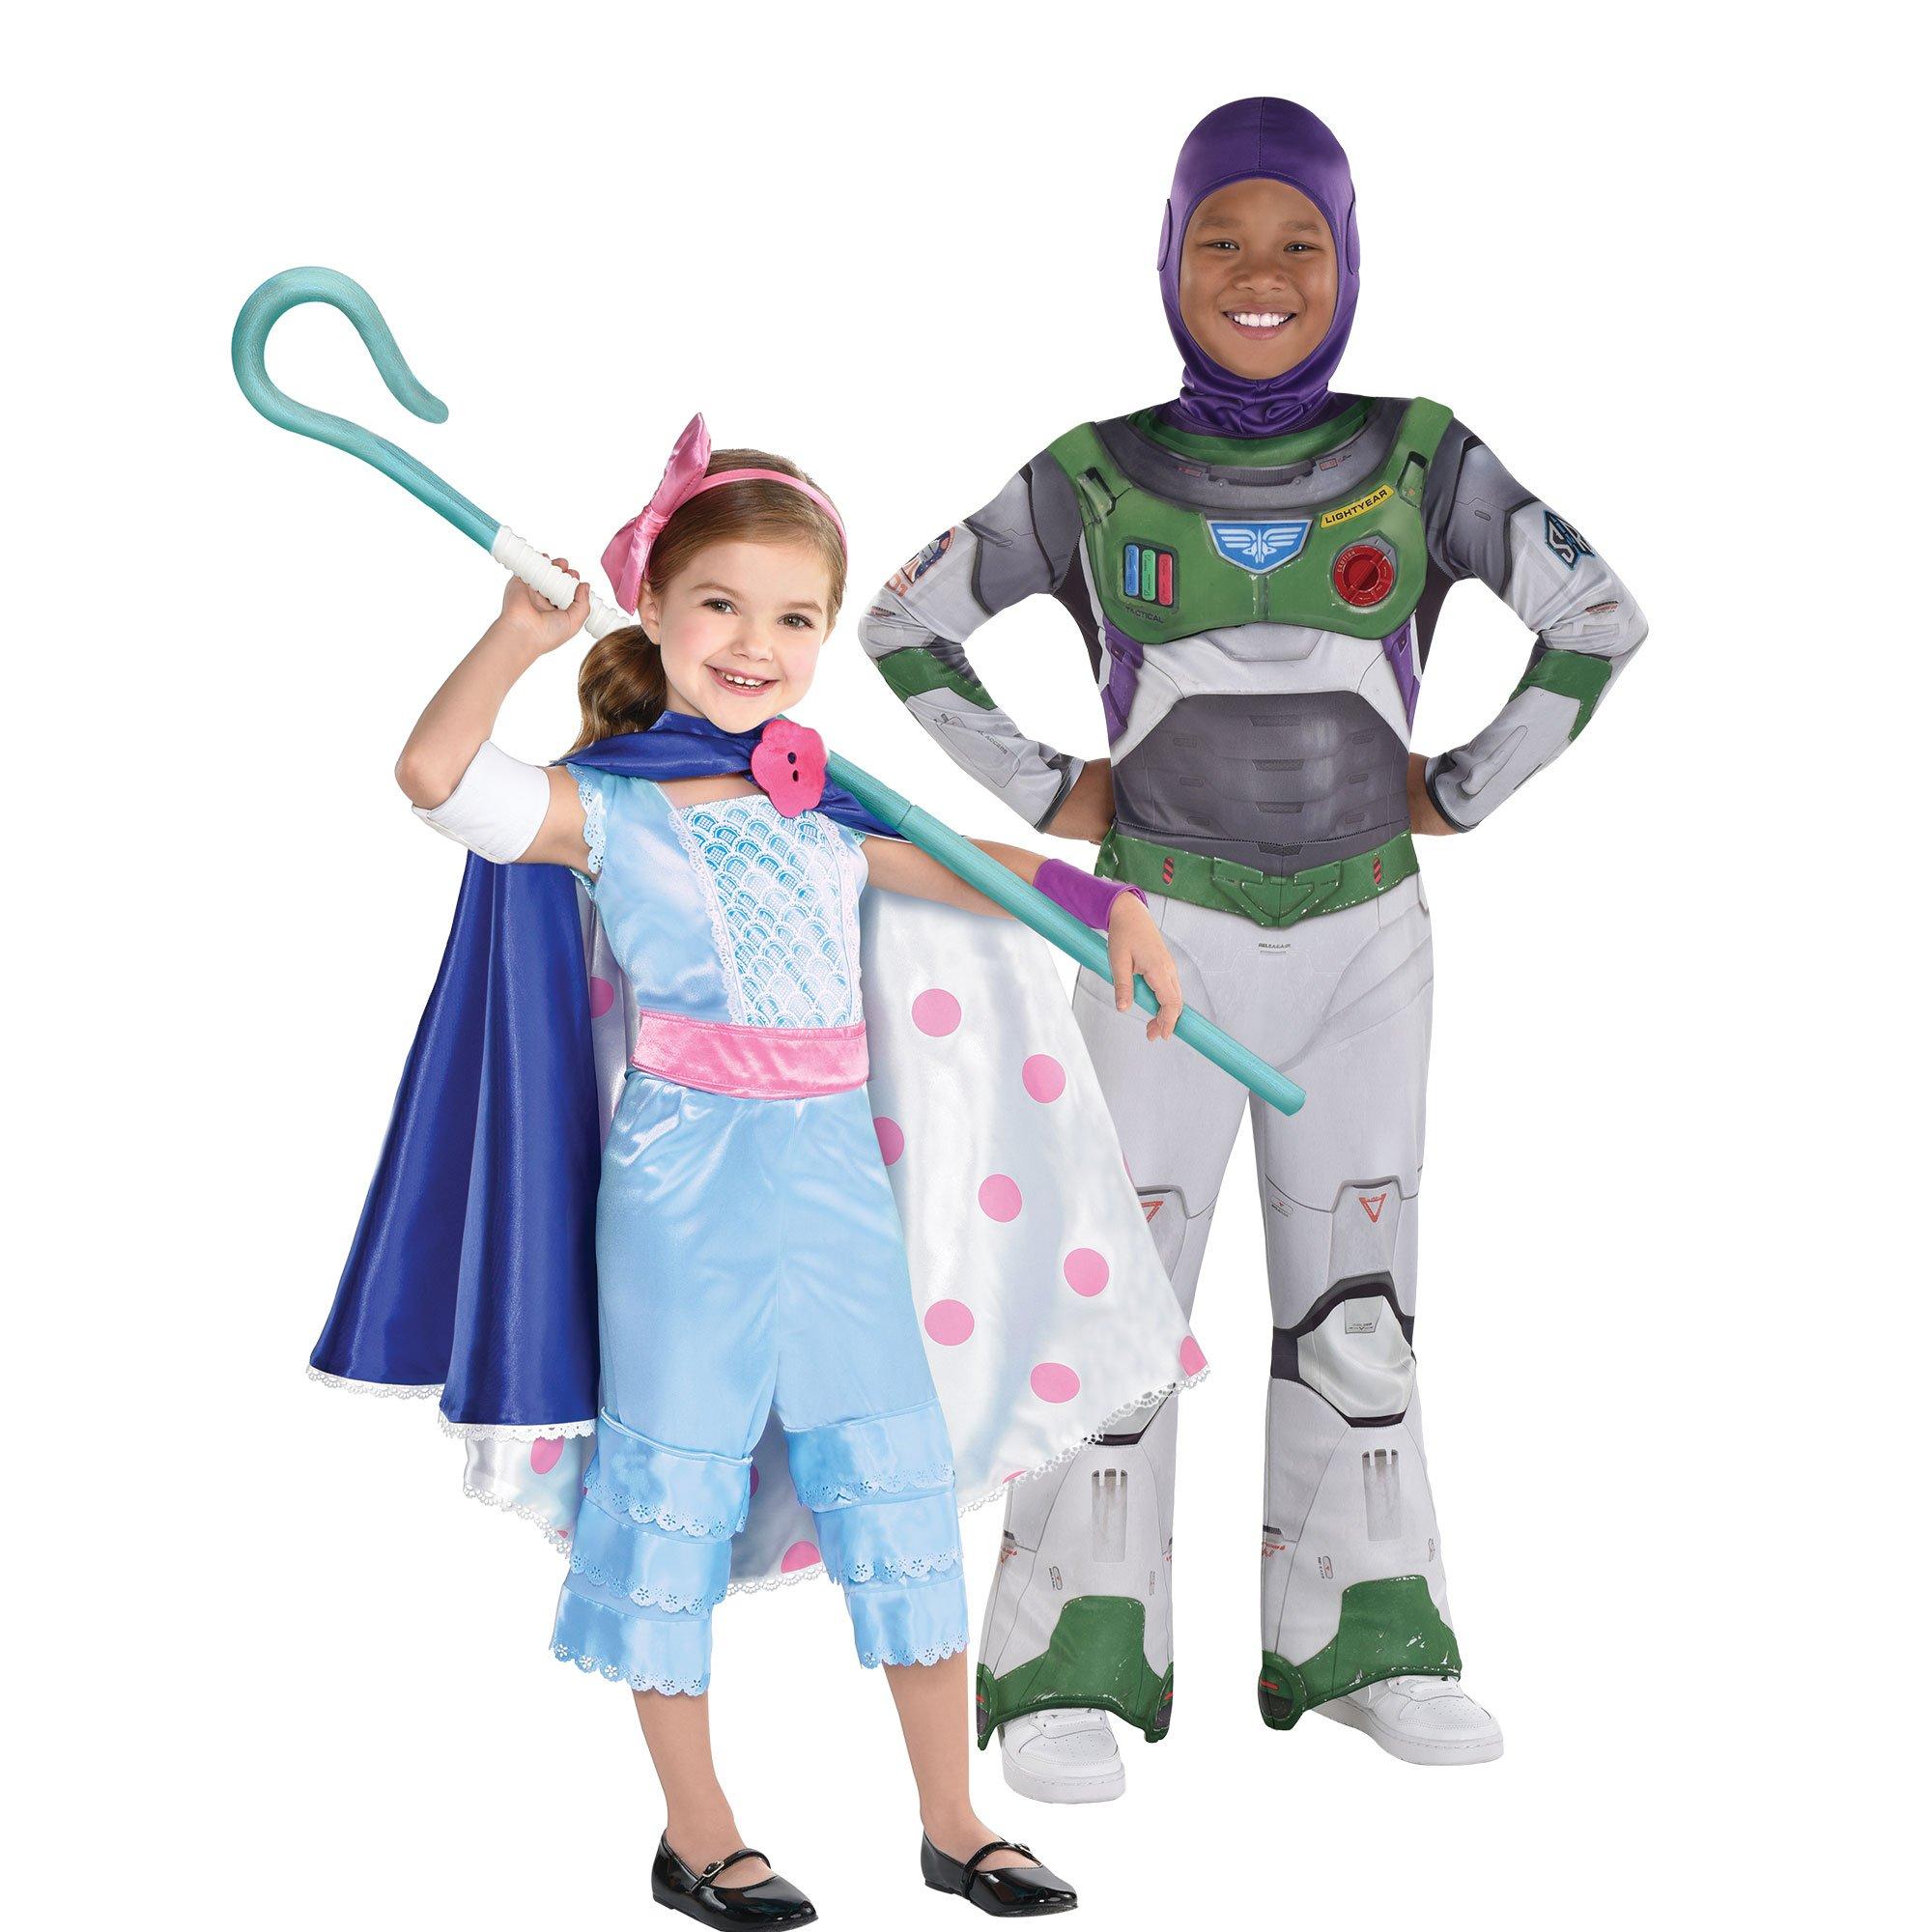 Kids' Forky Costume - Toy Story 4